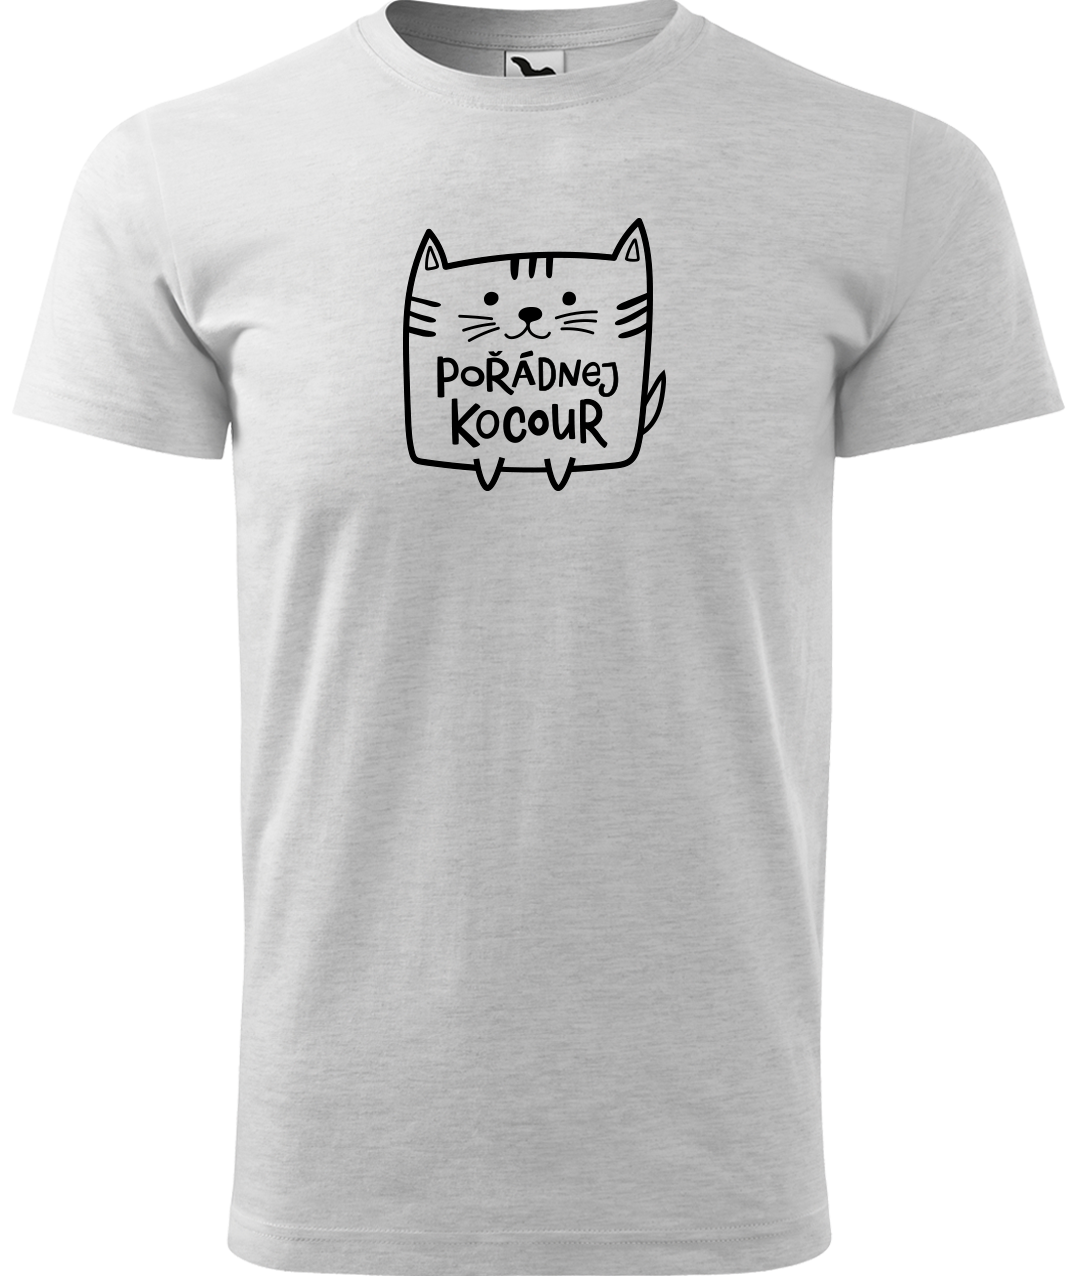 Pánské tričko s kočkou - Pořádnej kocour Velikost: XL, Barva: Světle šedý melír (03)